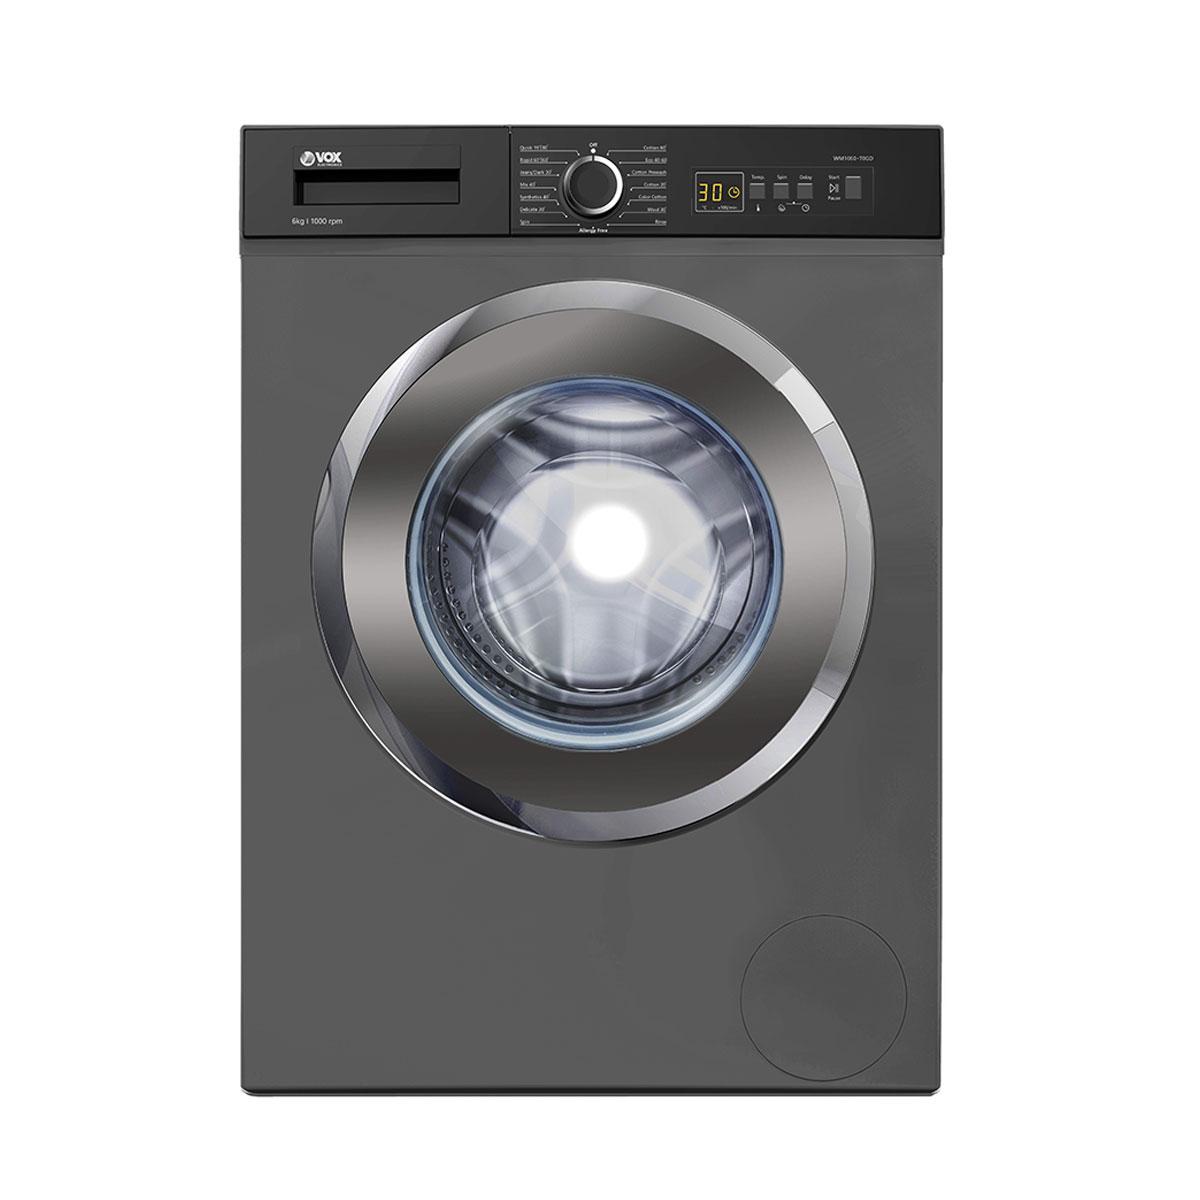 Selected image for VOX Mašina za pranje veša WM1060-T0GD